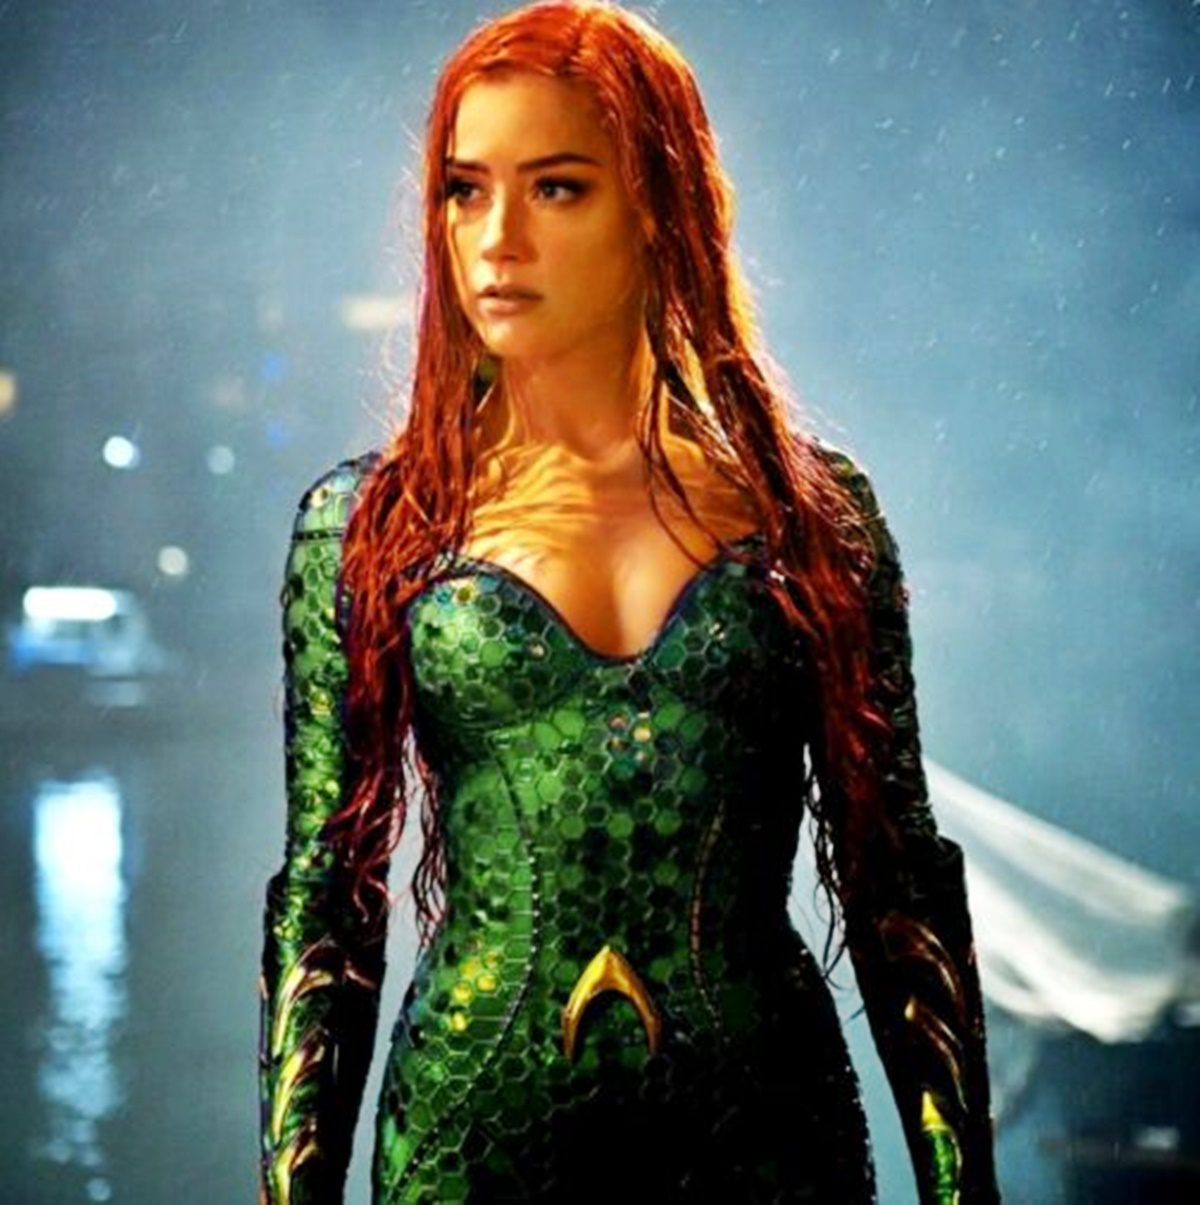 Lehet, hogy Amber Heard összes jelenetét kivágják az Aquaman 2-ből?